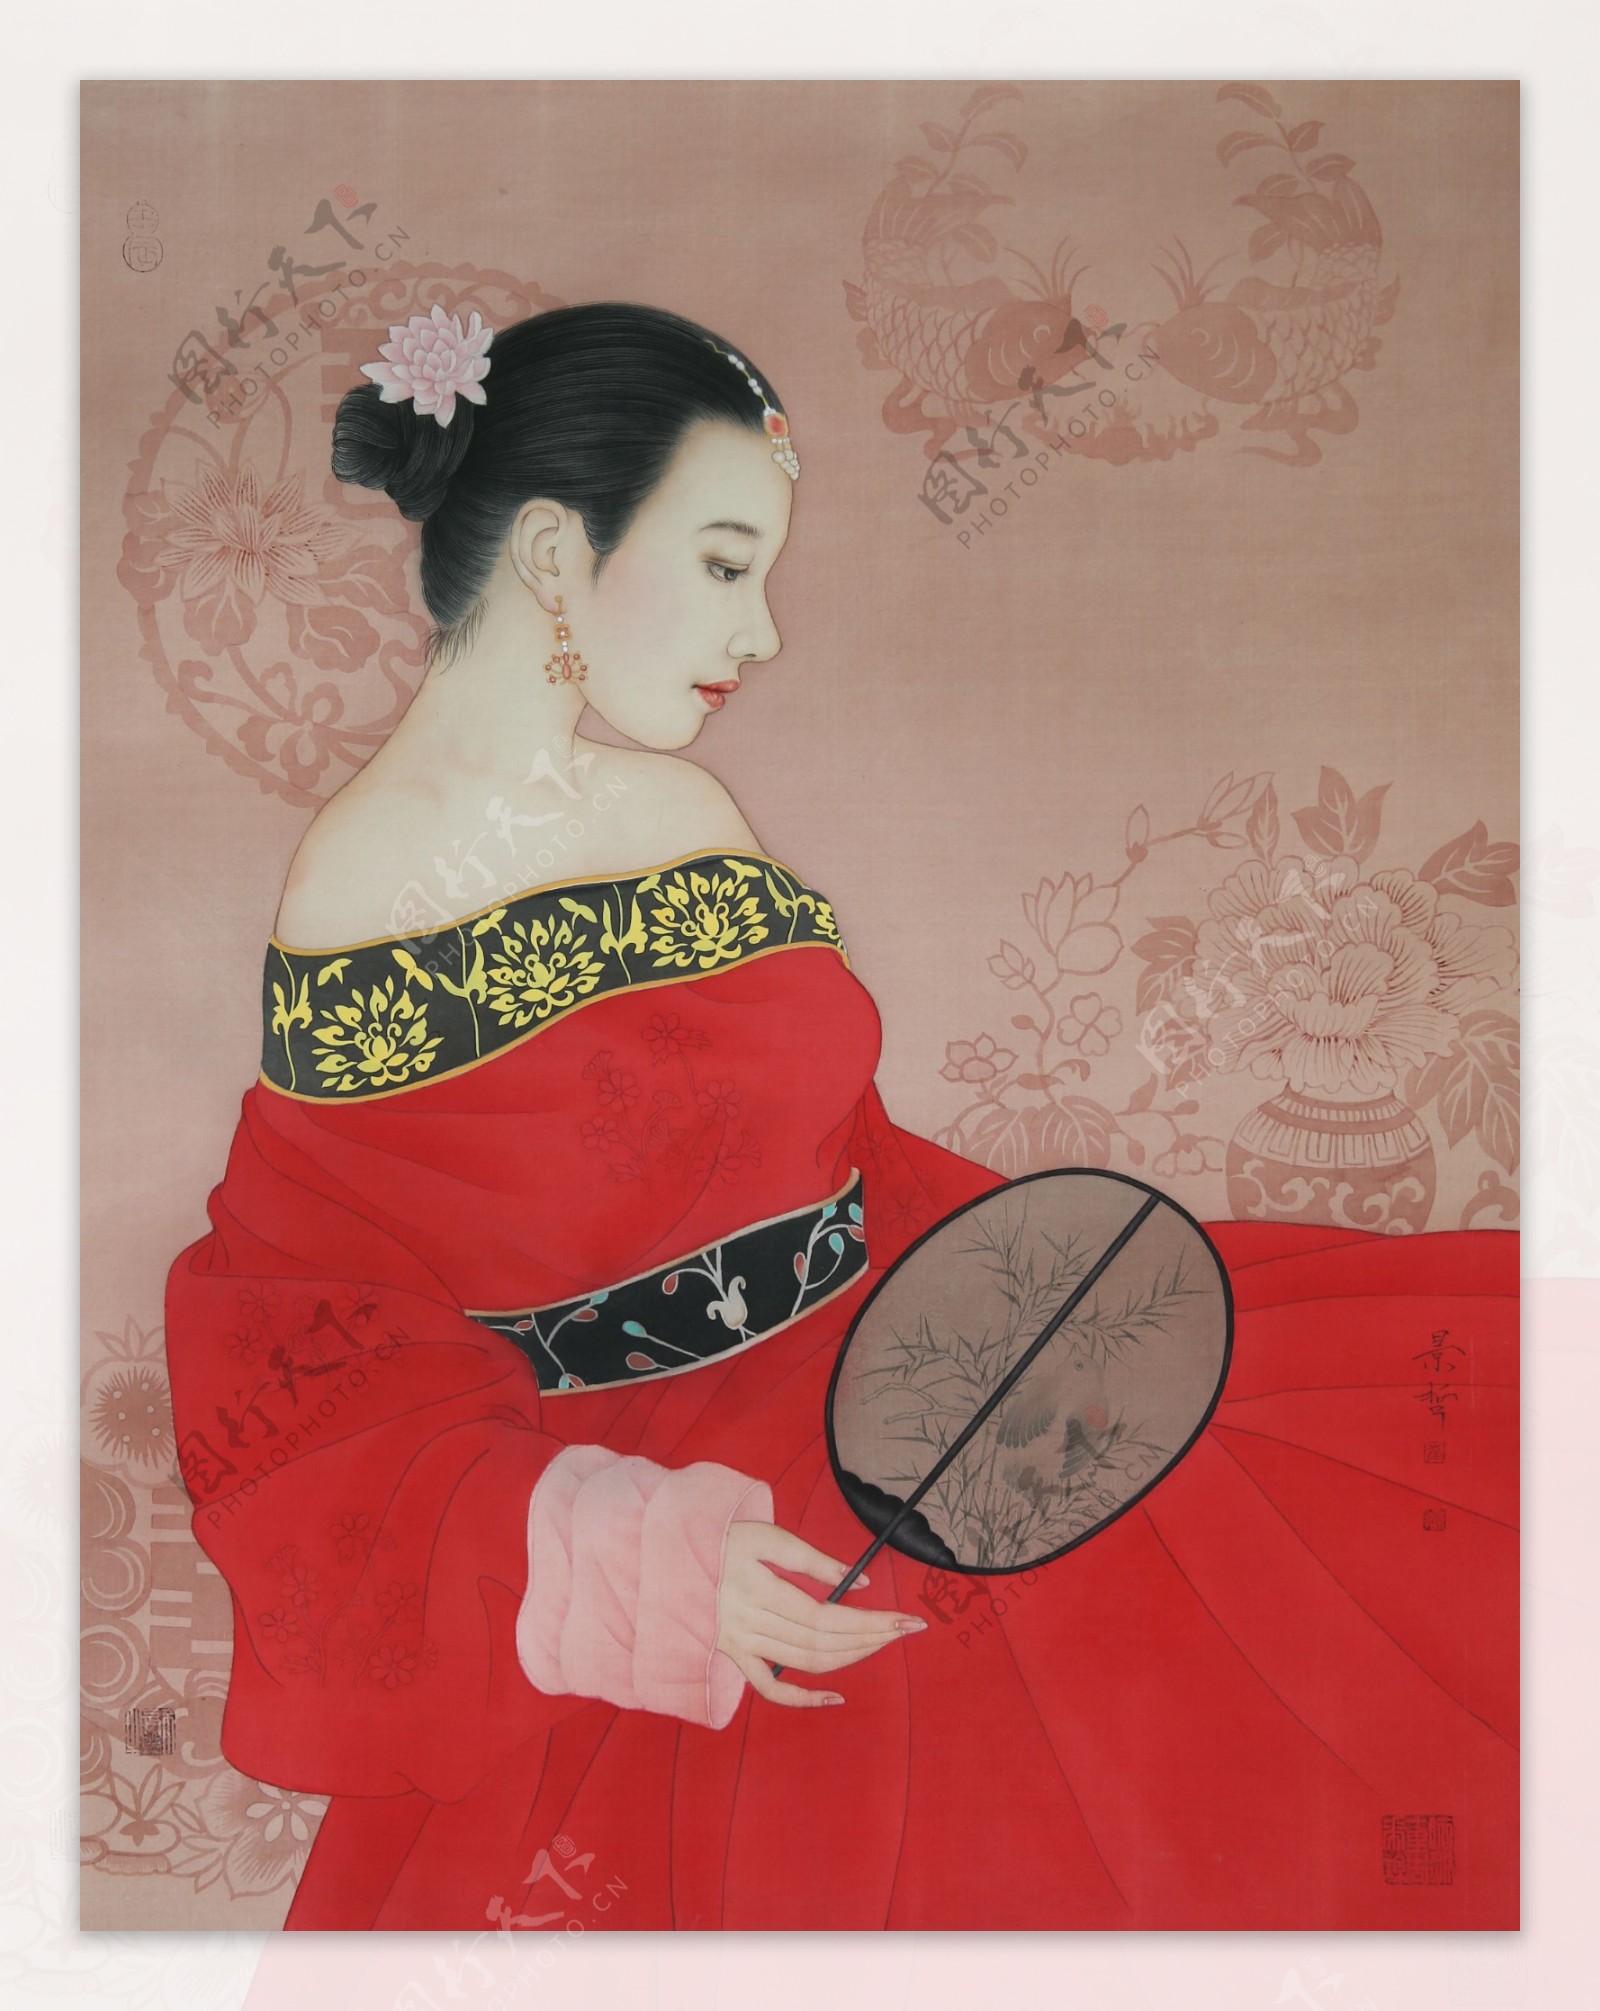 中国画工笔画古代侍女图片